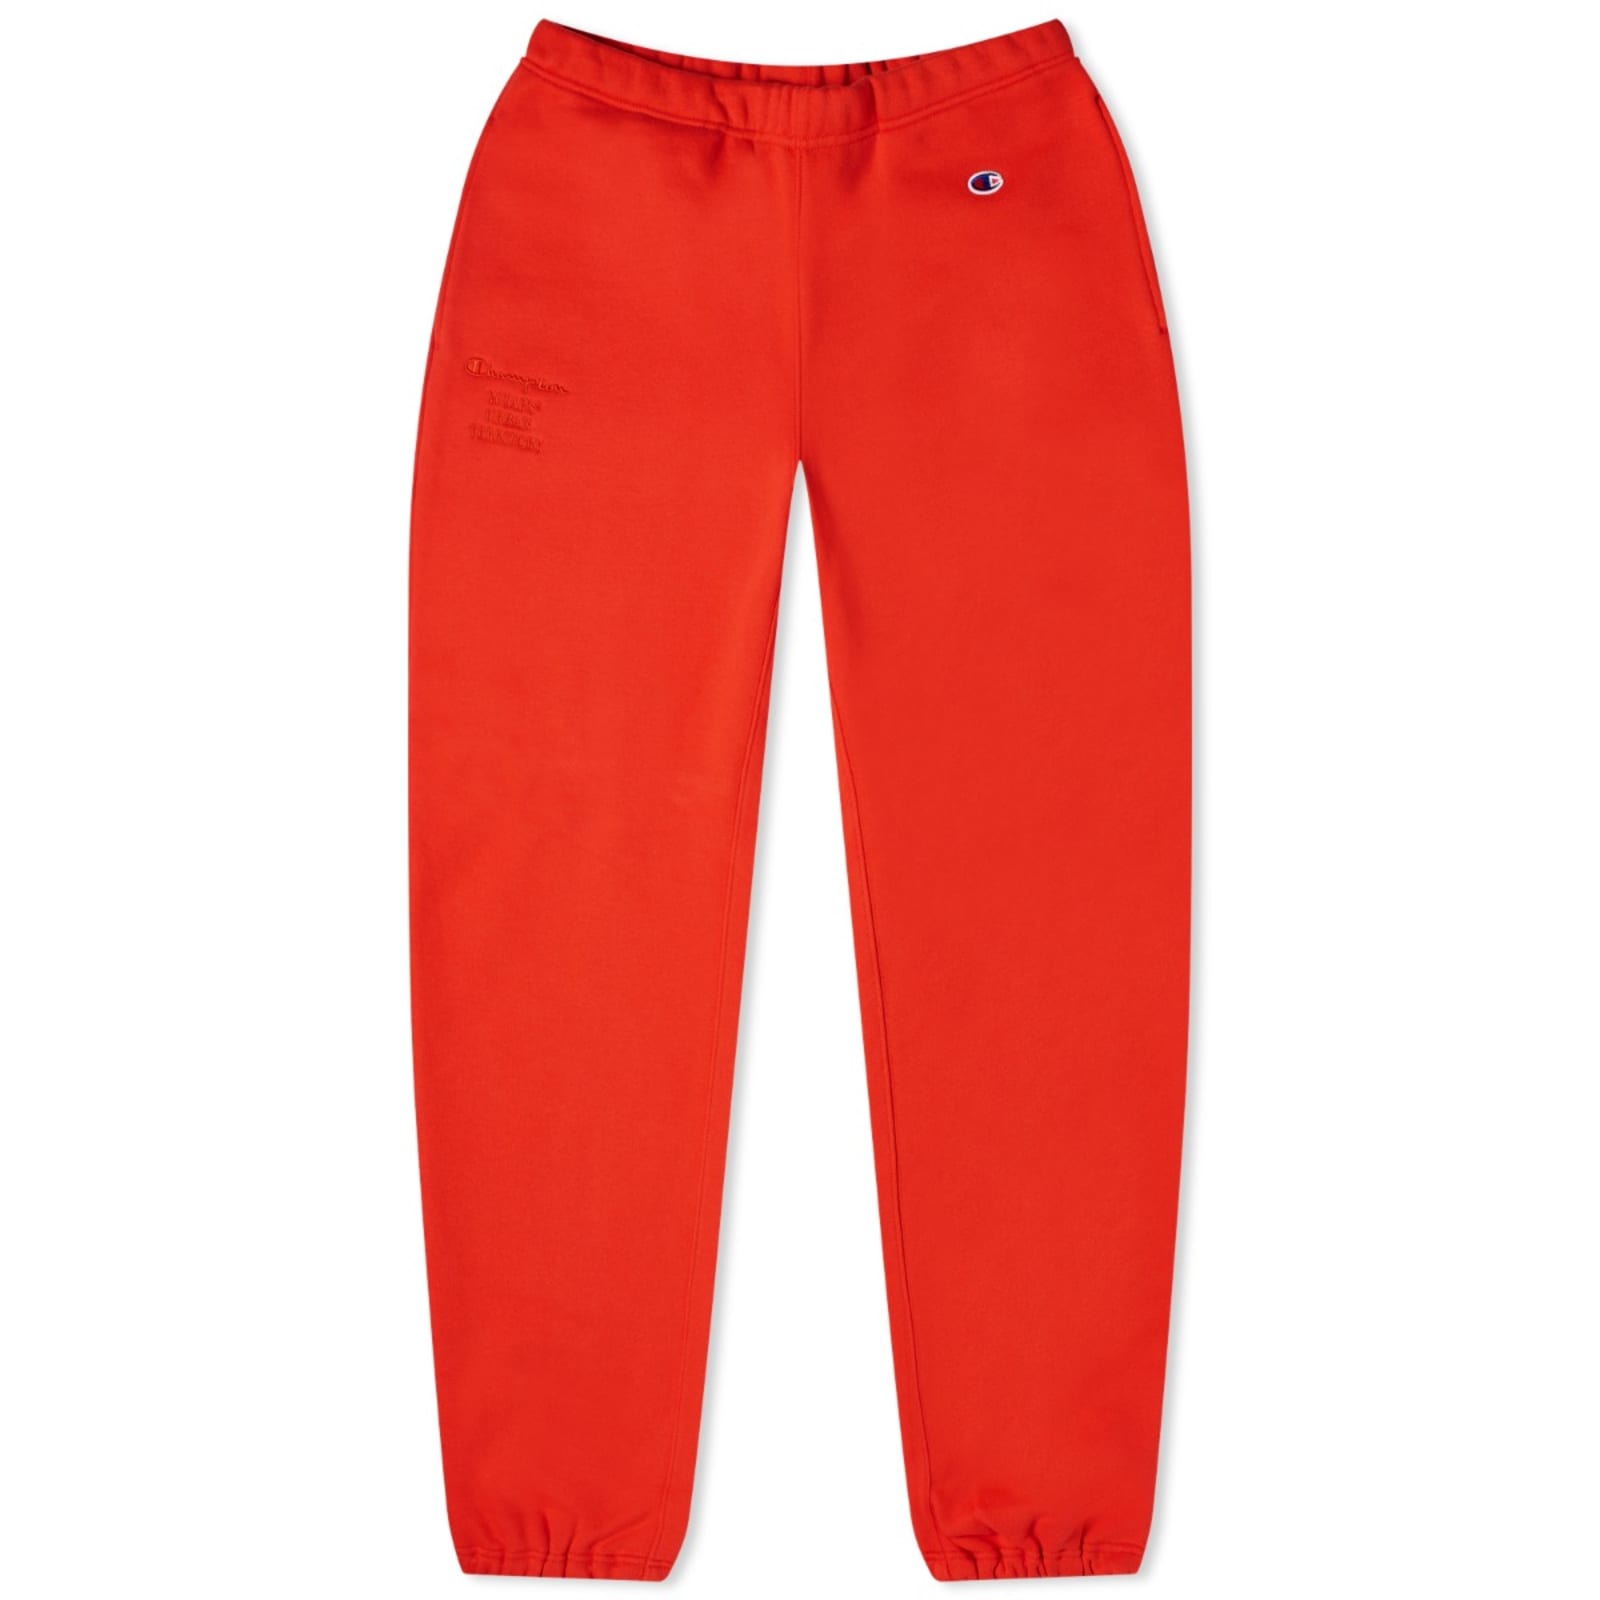 Спортивные брюки Champion X Wtaps, цвет Orange